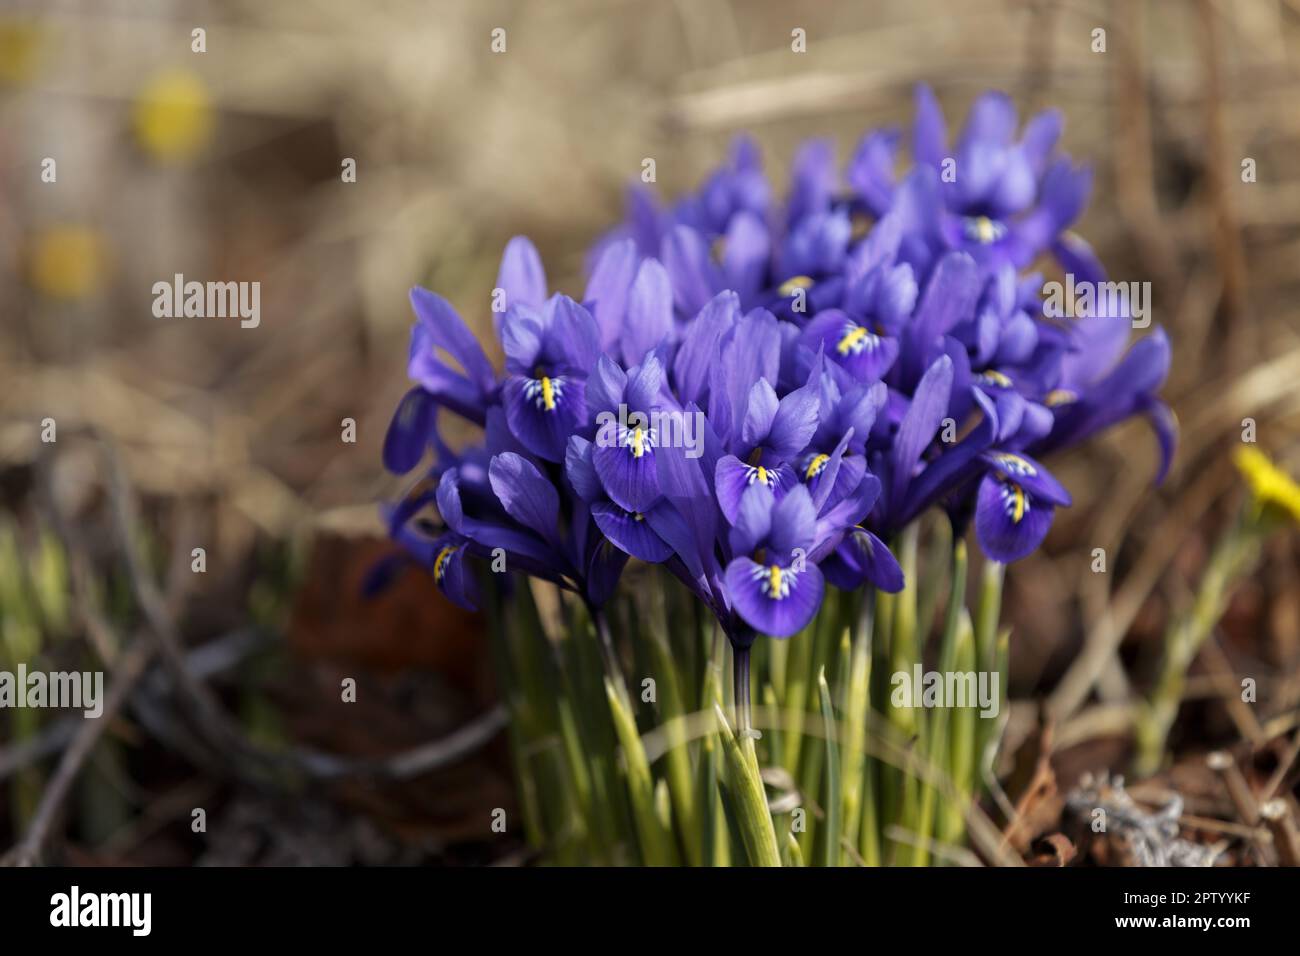 Iris reticulata. Fleur en forme de fleur bleue Iris reticulata. Les mini iris printaniers fleurissent dans le parc. Belles fleurs violettes de l'iris dans la prairie Banque D'Images